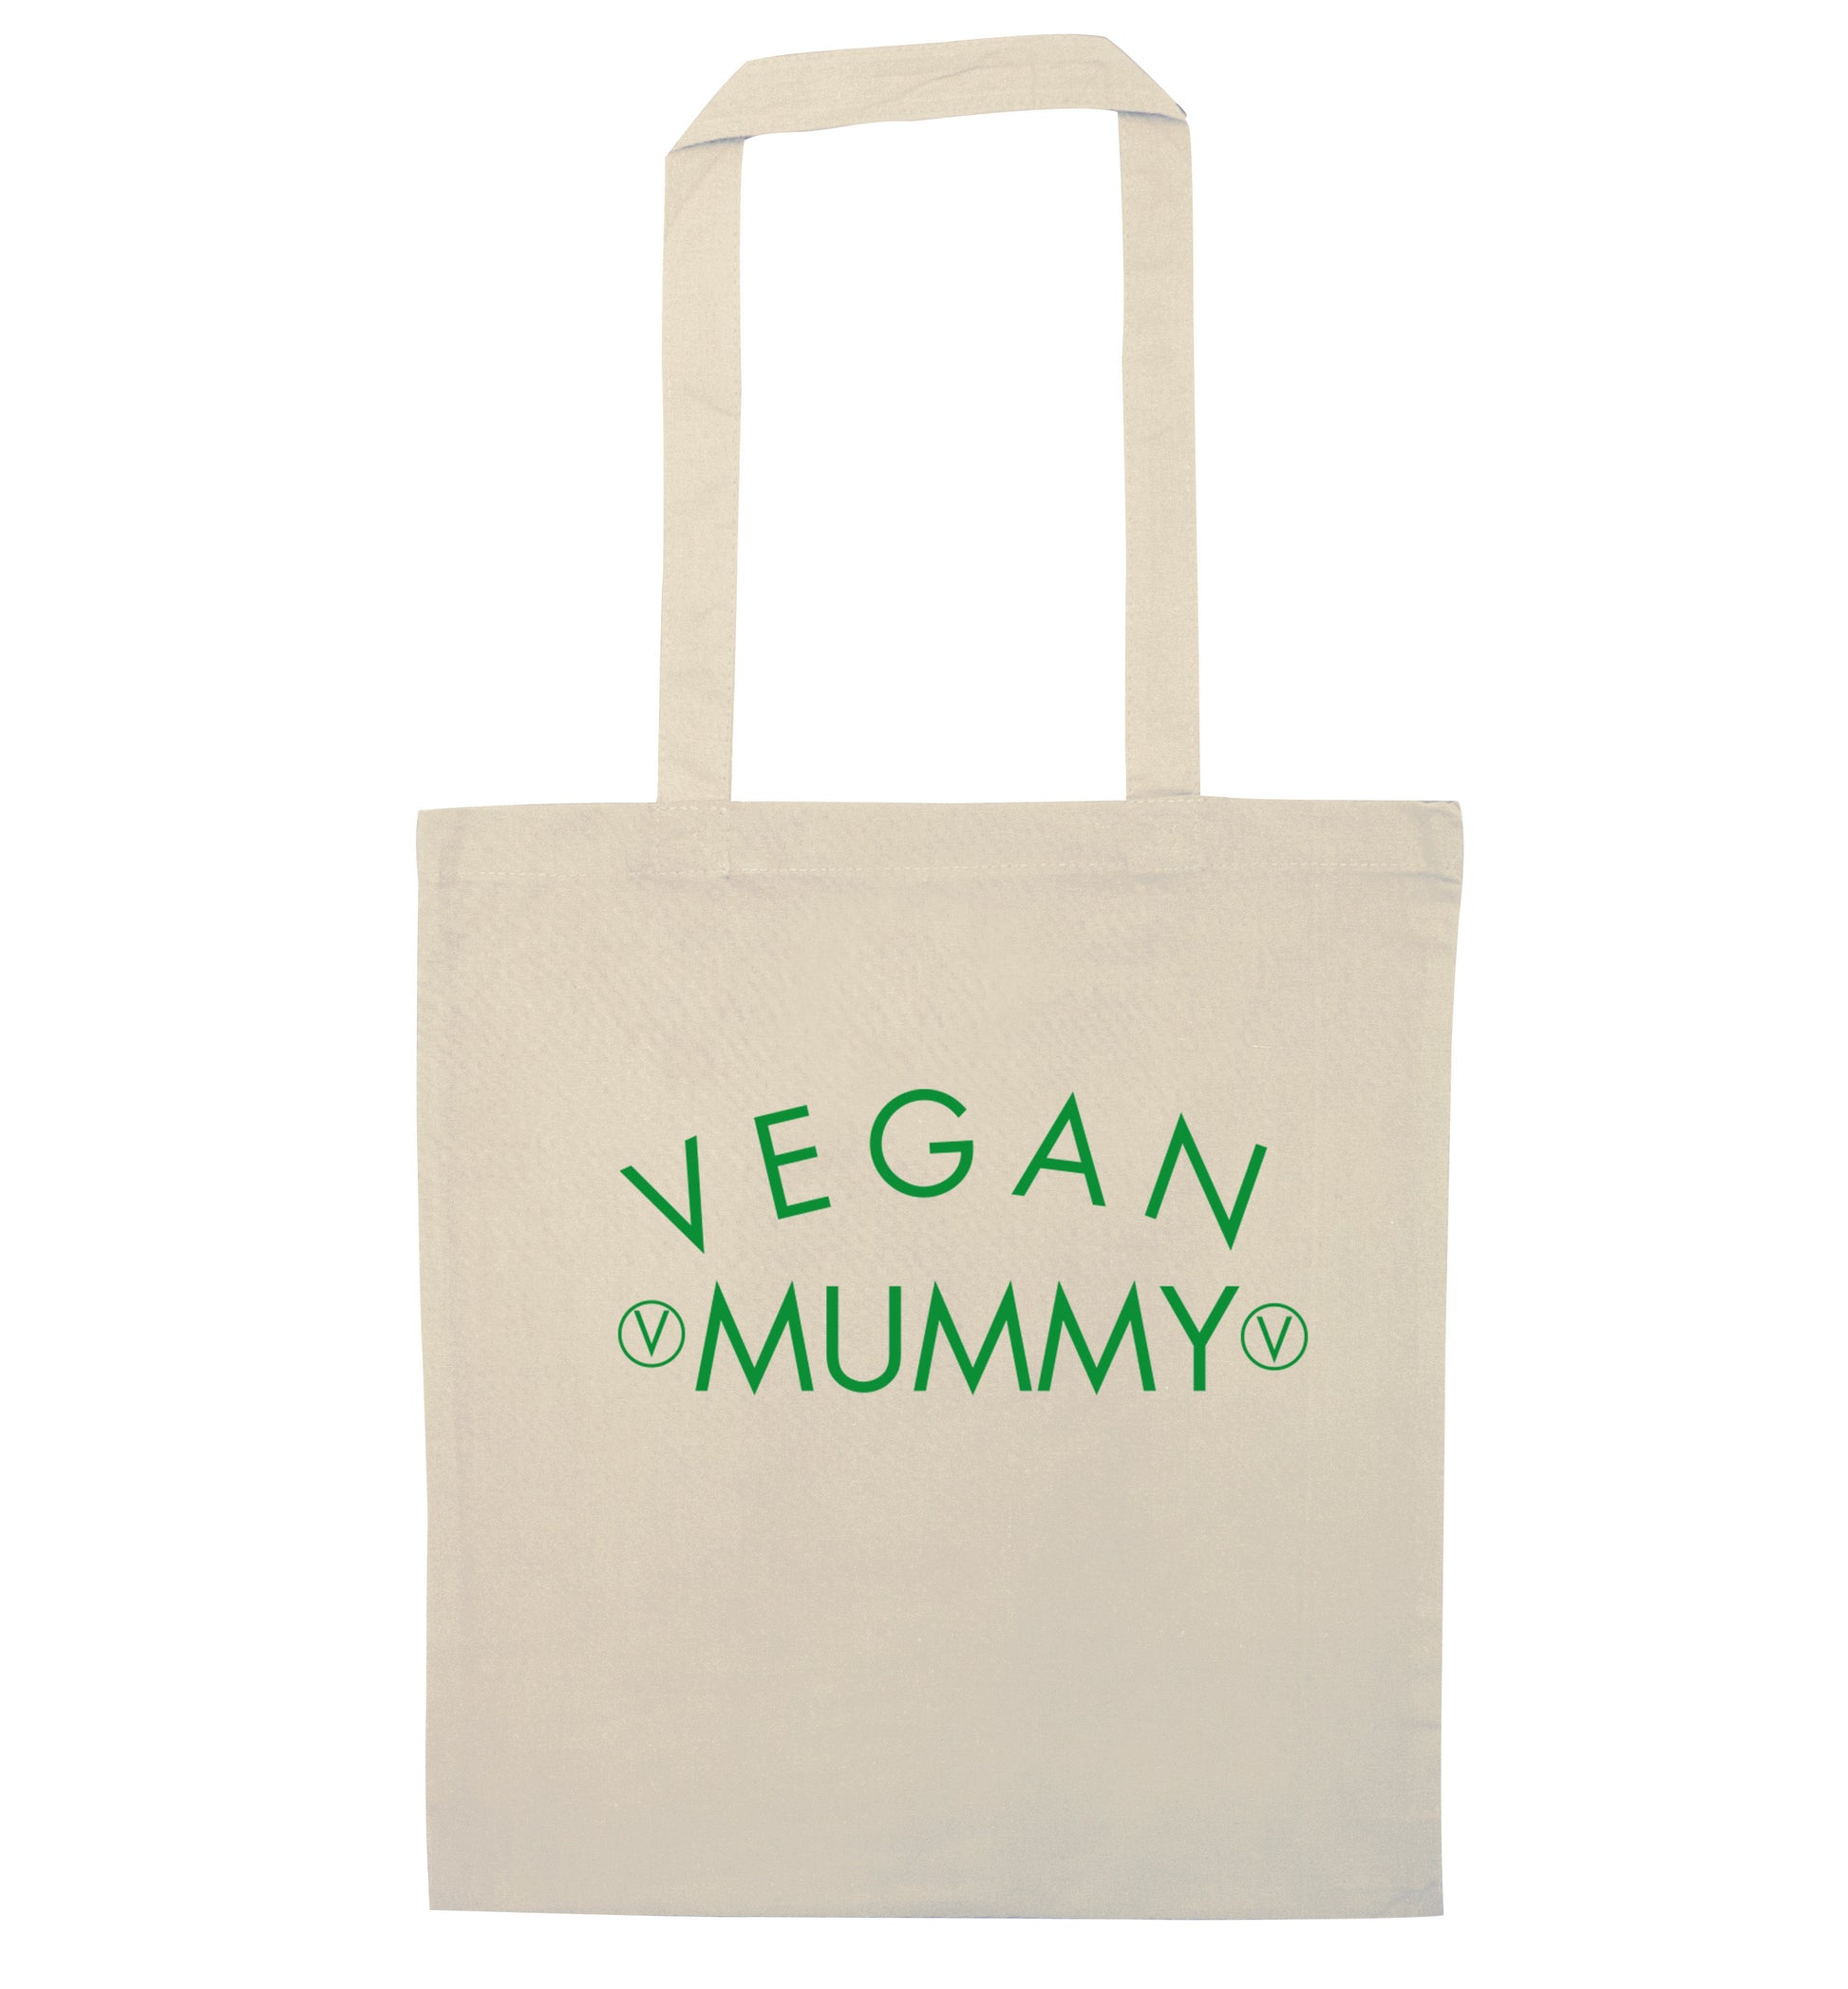 Vegan mummy natural tote bag